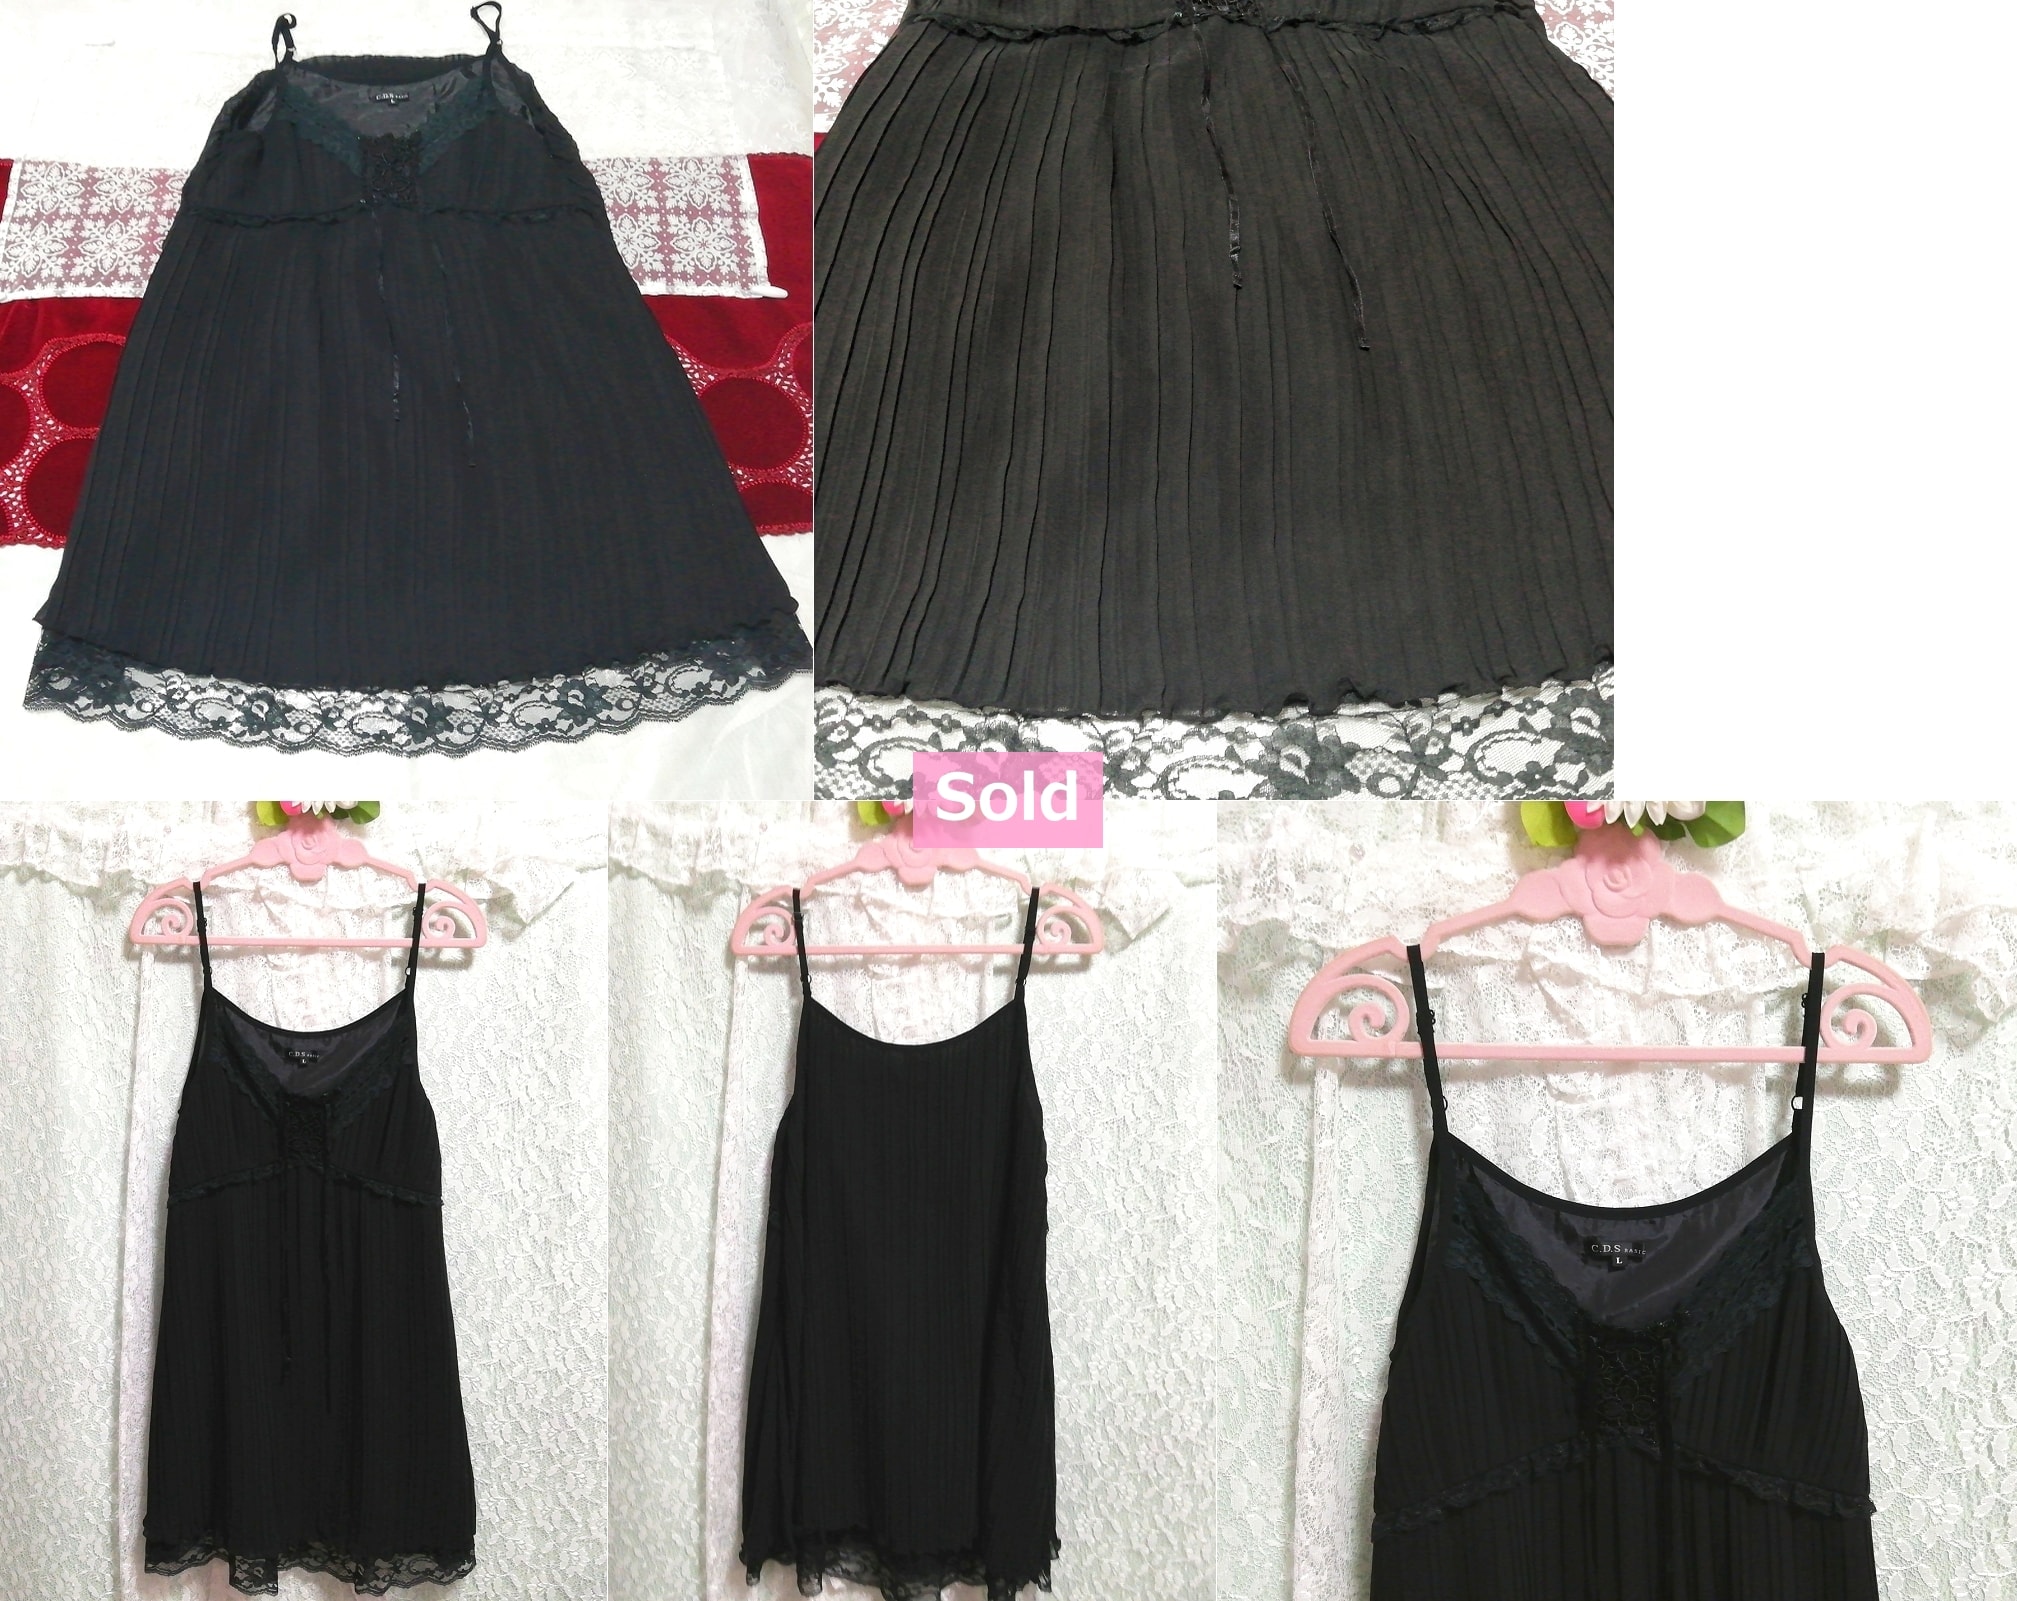 Robe camisole en mousseline de soie, jupe plissée en dentelle noire, chemise de nuit, mode, mode féminine, camisole